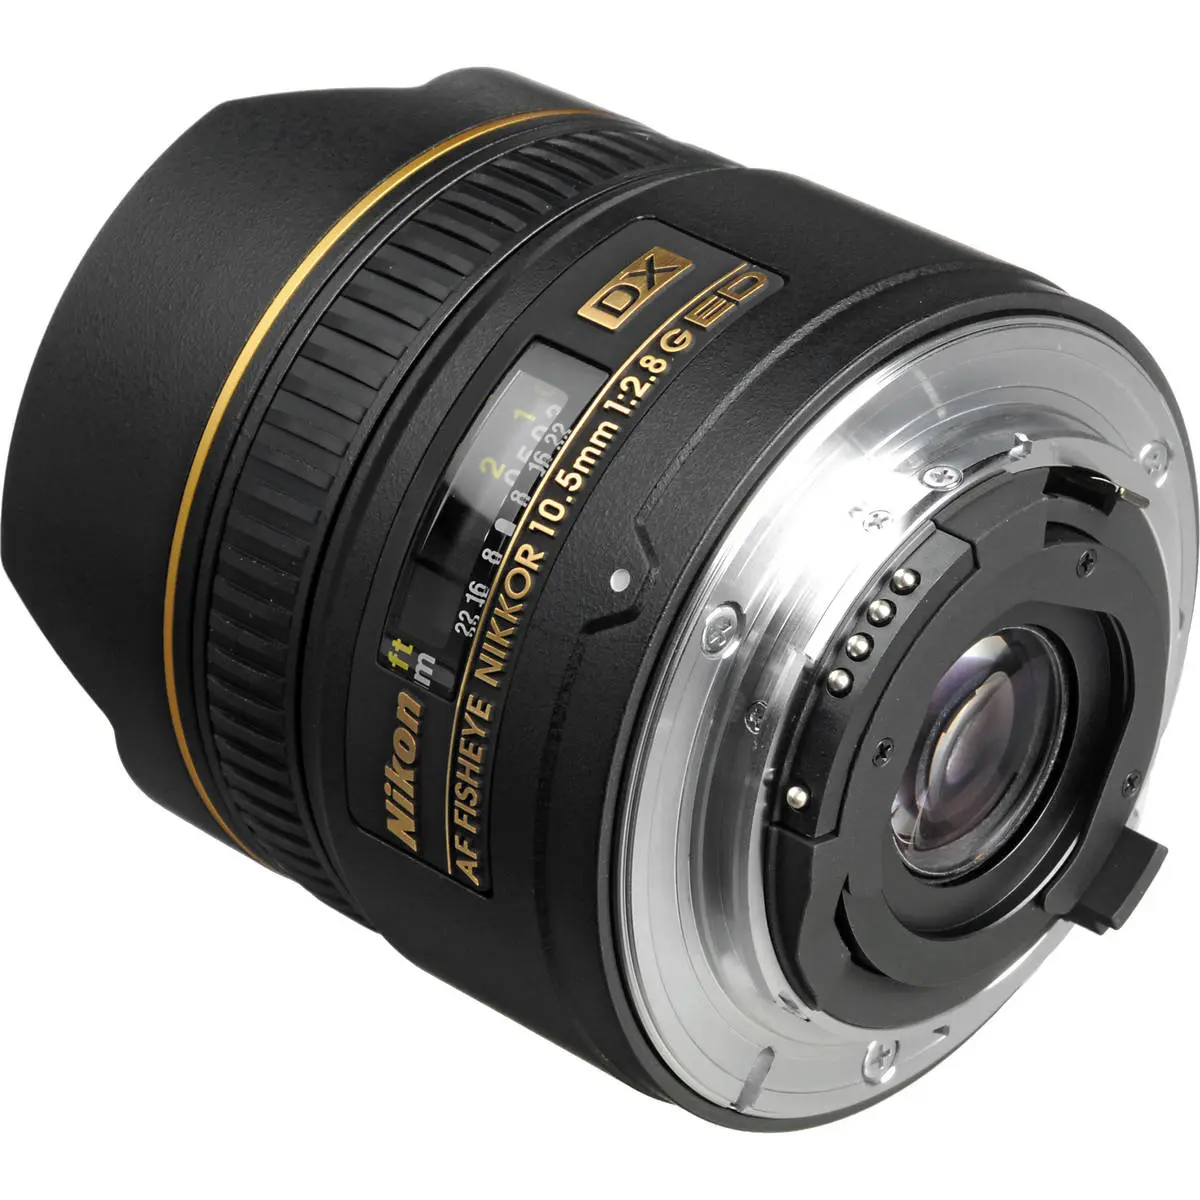 2. Nikon AF DX Fisheye-Nikkor 10.5mm f/2.8G ED